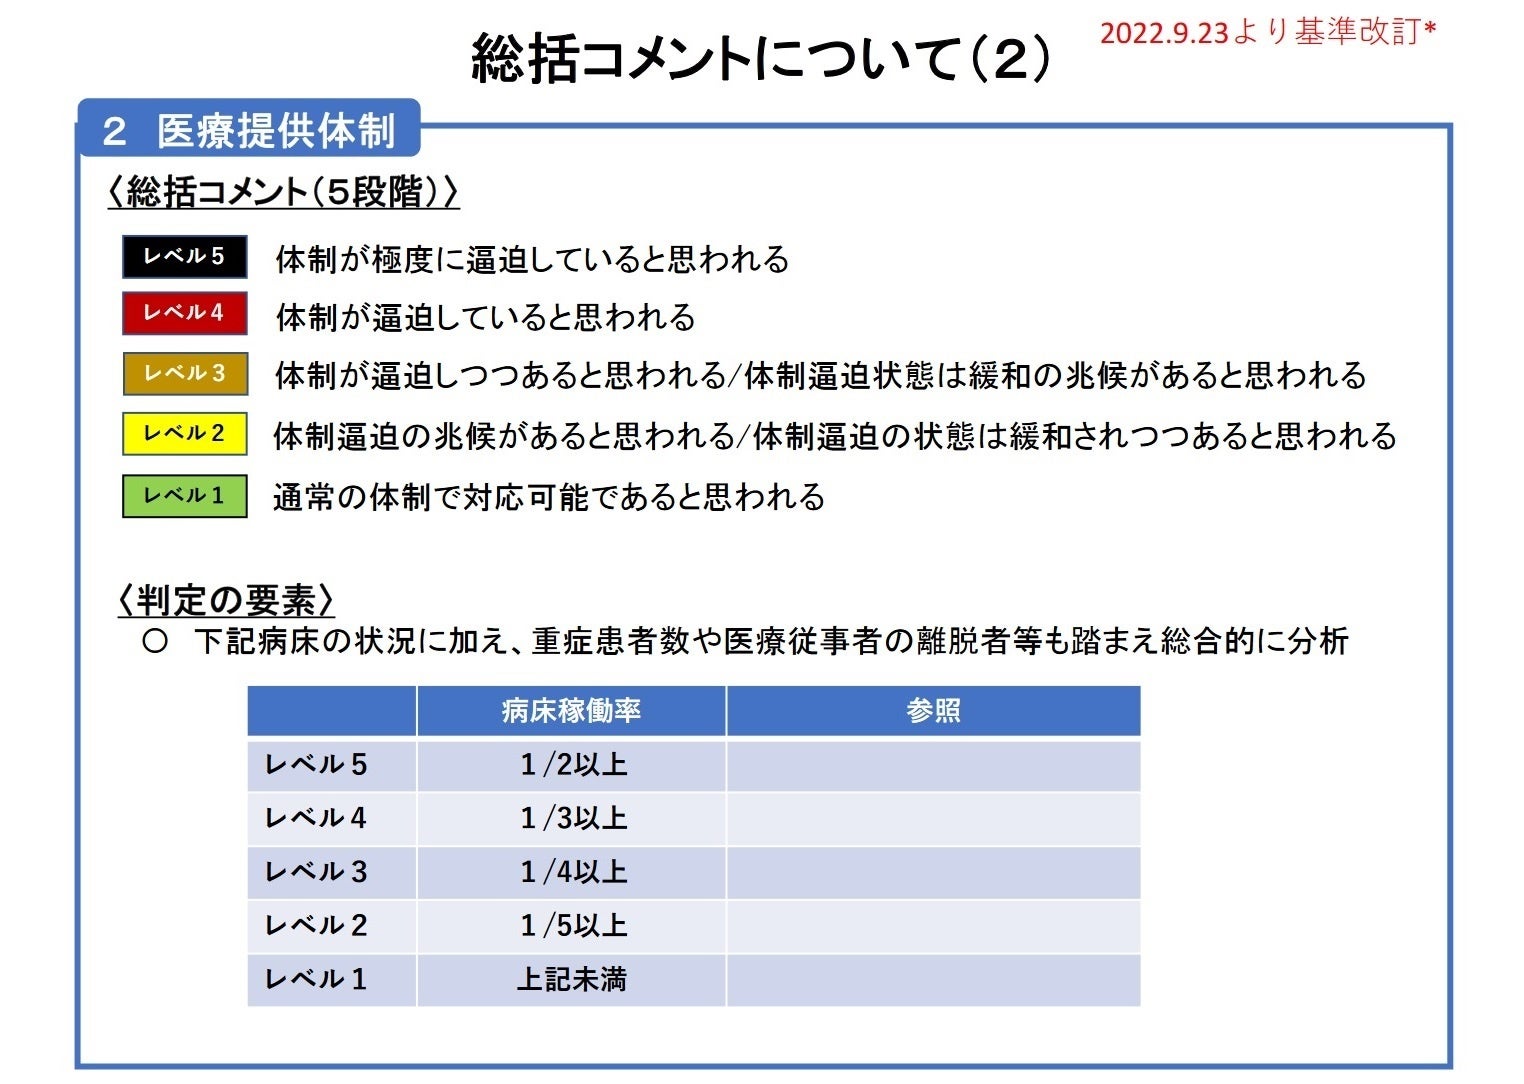 【岡山大学】岡山県内の感染状況・医療提供体制の分析について（2023年12月15日現在）